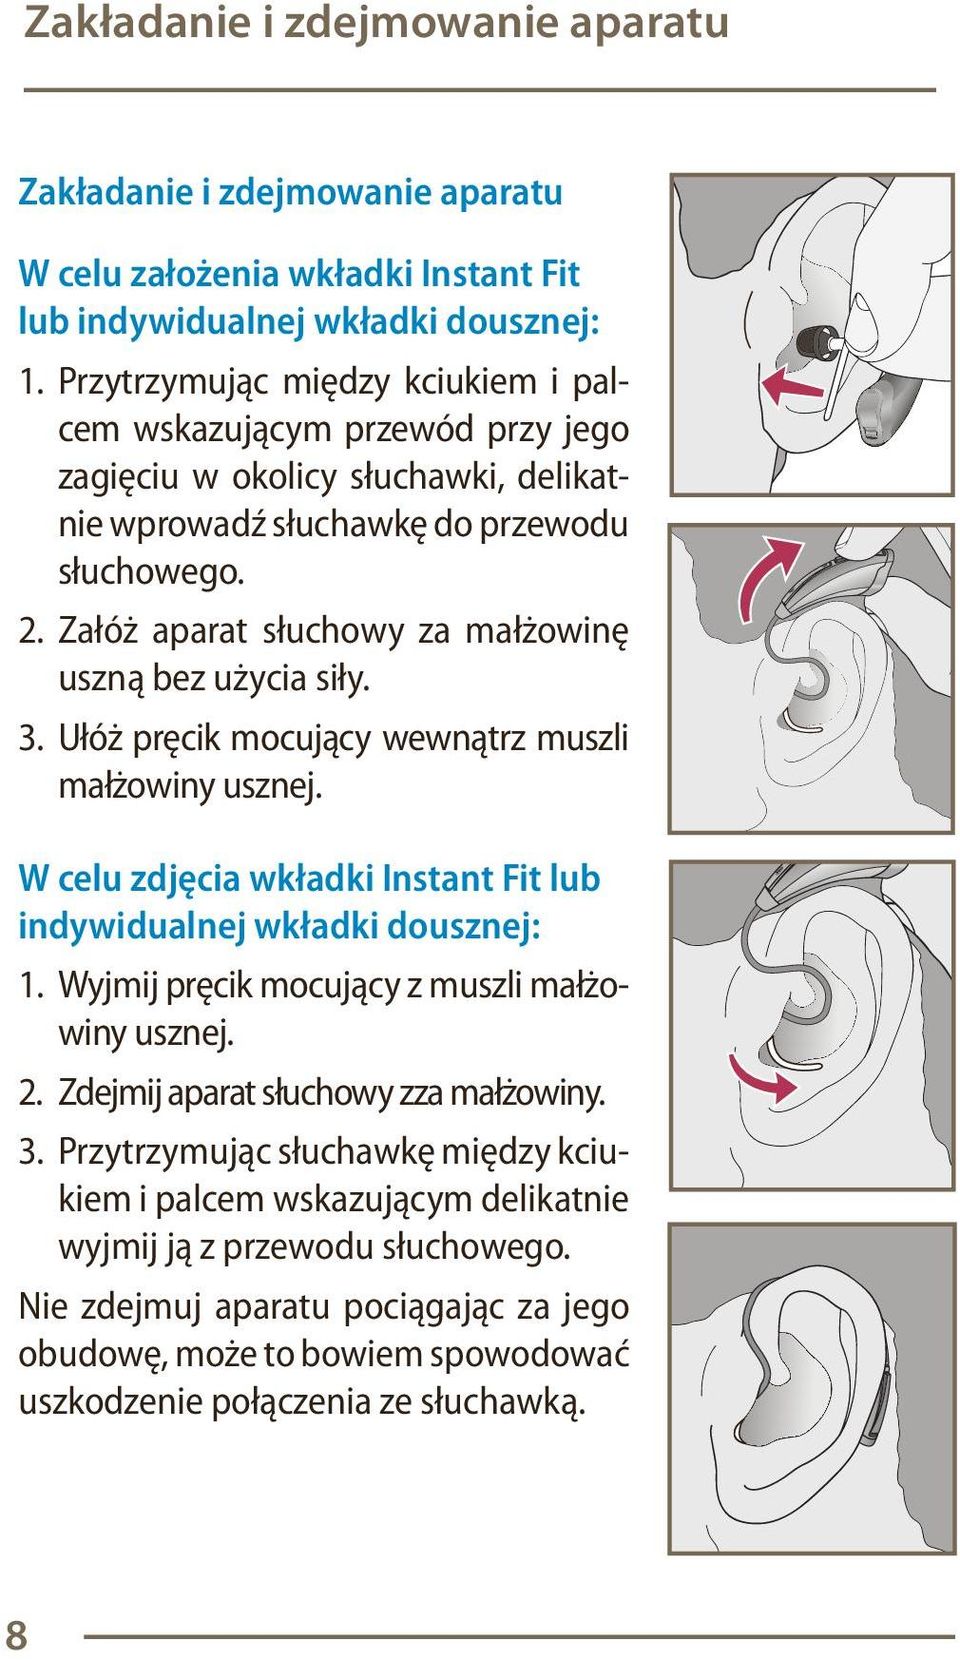 Załóż aparat słuchowy za małżowinę uszną bez użycia siły. 3. Ułóż pręcik mocujący wewnątrz muszli małżowiny usznej. W celu zdjęcia wkładki Instant Fit lub indywidualnej wkładki dousznej: 1.